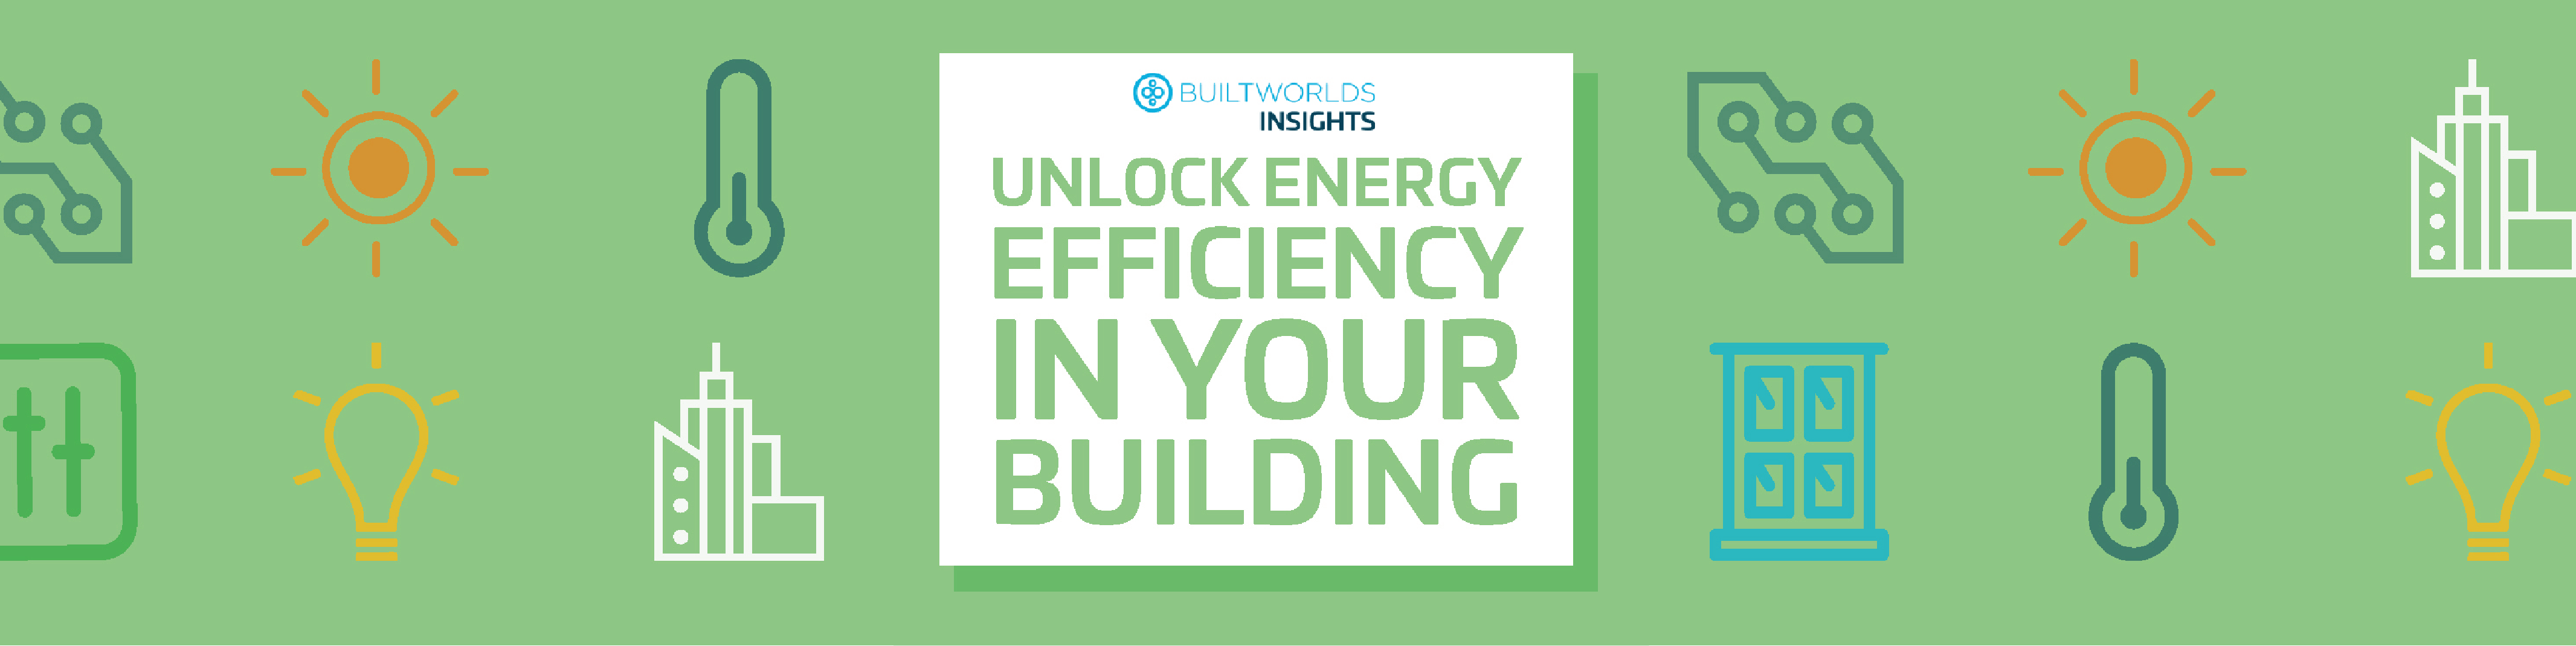 Unlock Energy Efficiency Banner